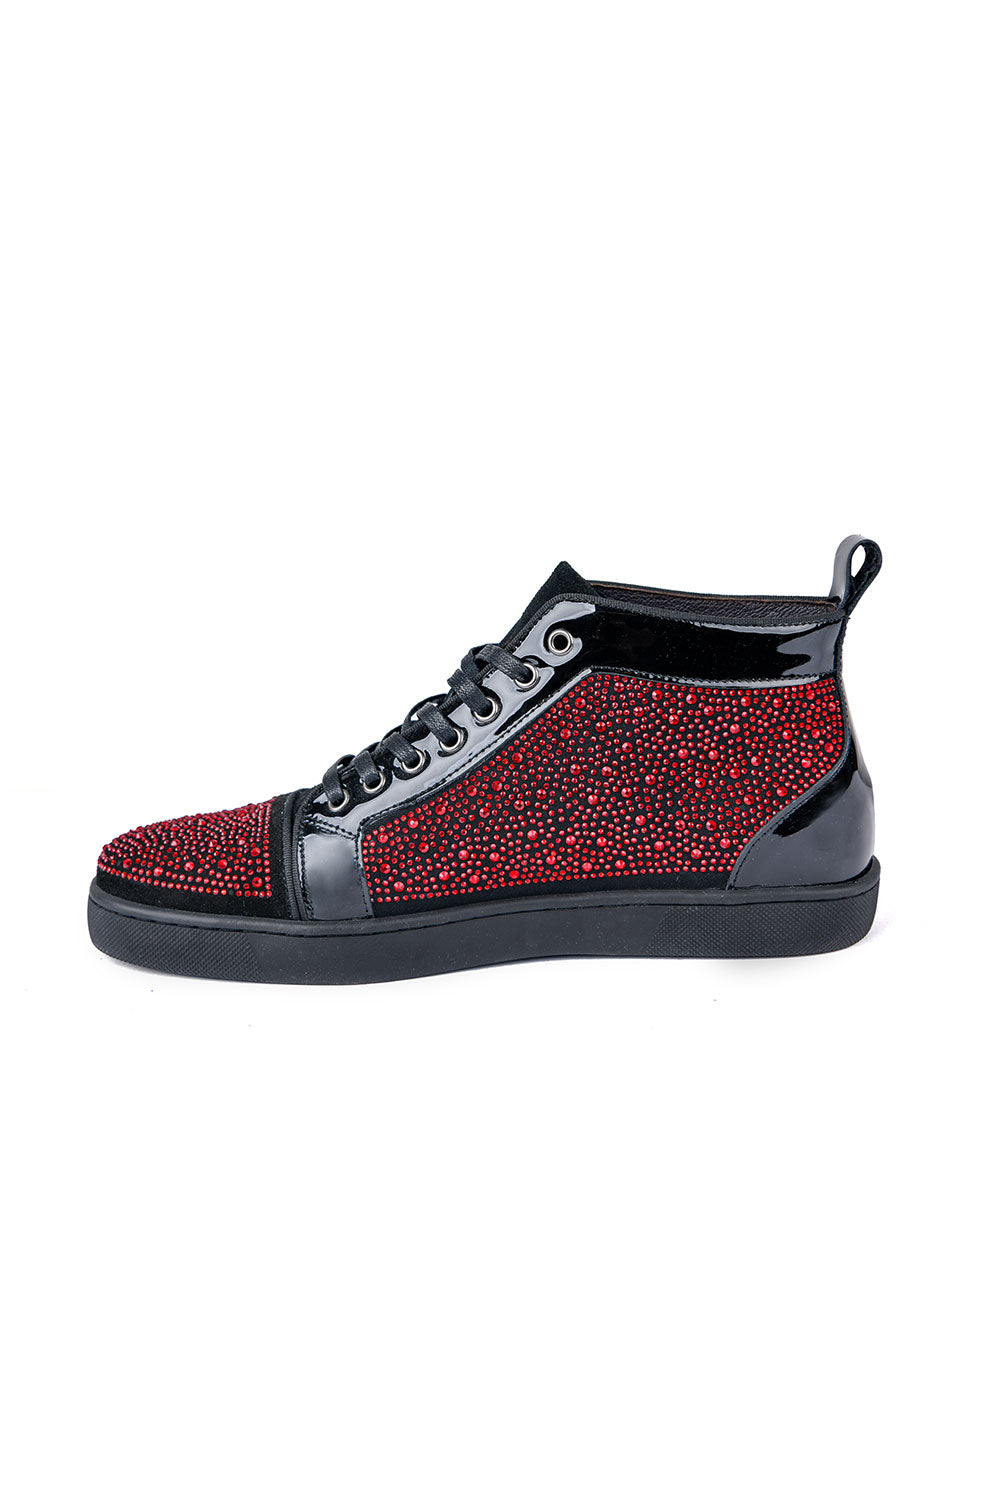 Barabas men's luxury rhinestone black Red high-top sneakers SH705